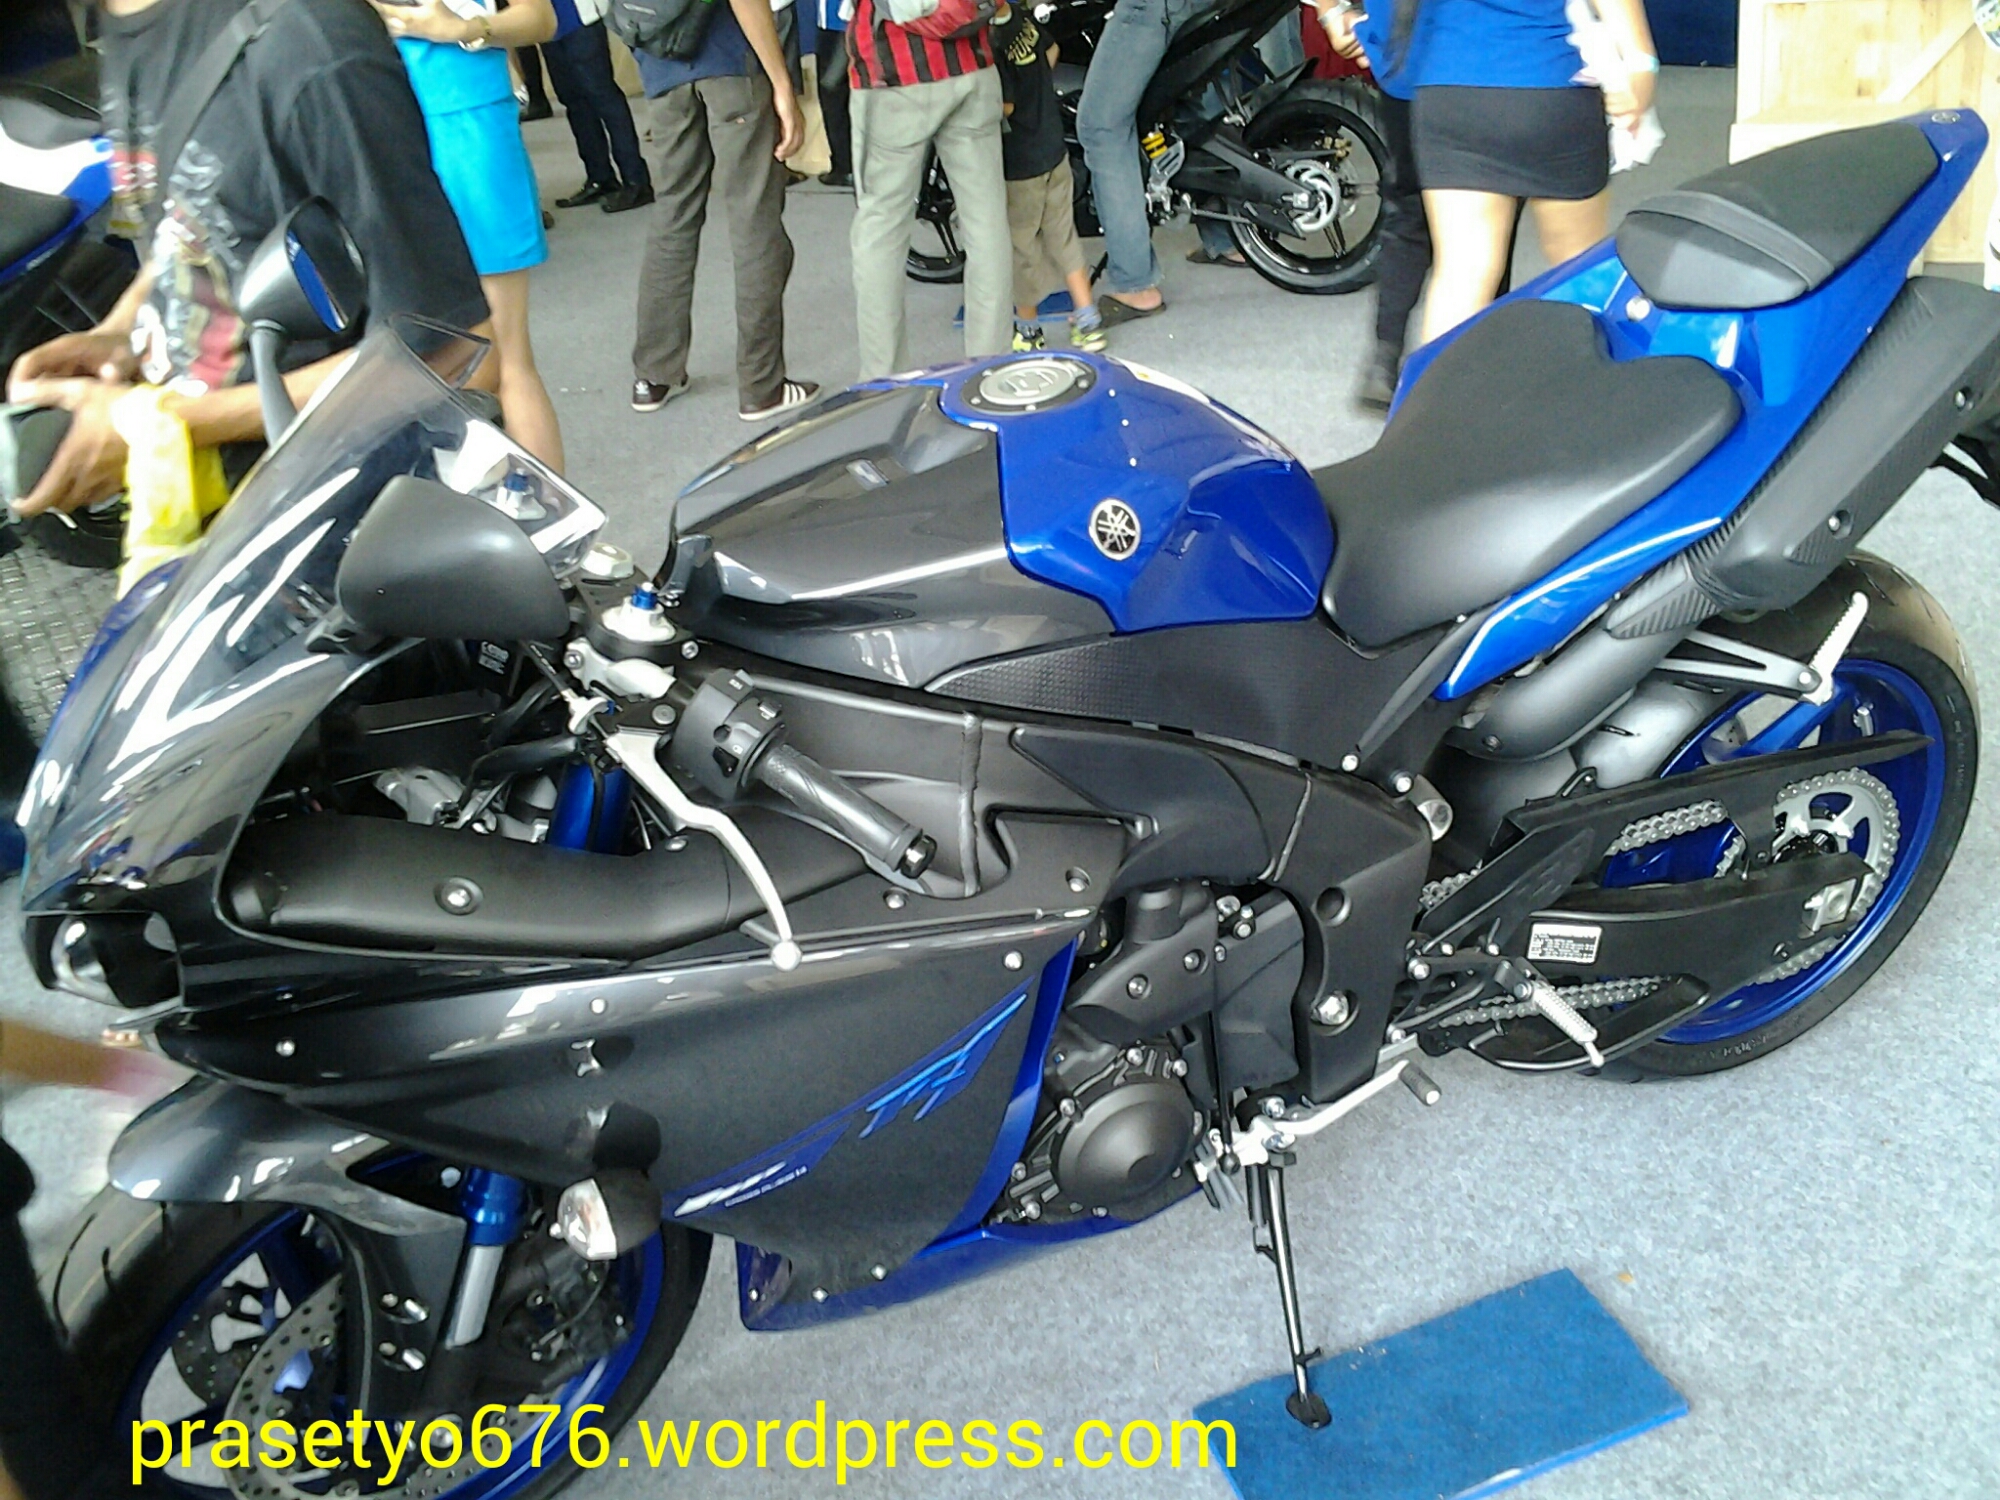 Yamaha YZF R1 2014 Superbike 1000 Cc Andalan Yamaha Prasetyo676com